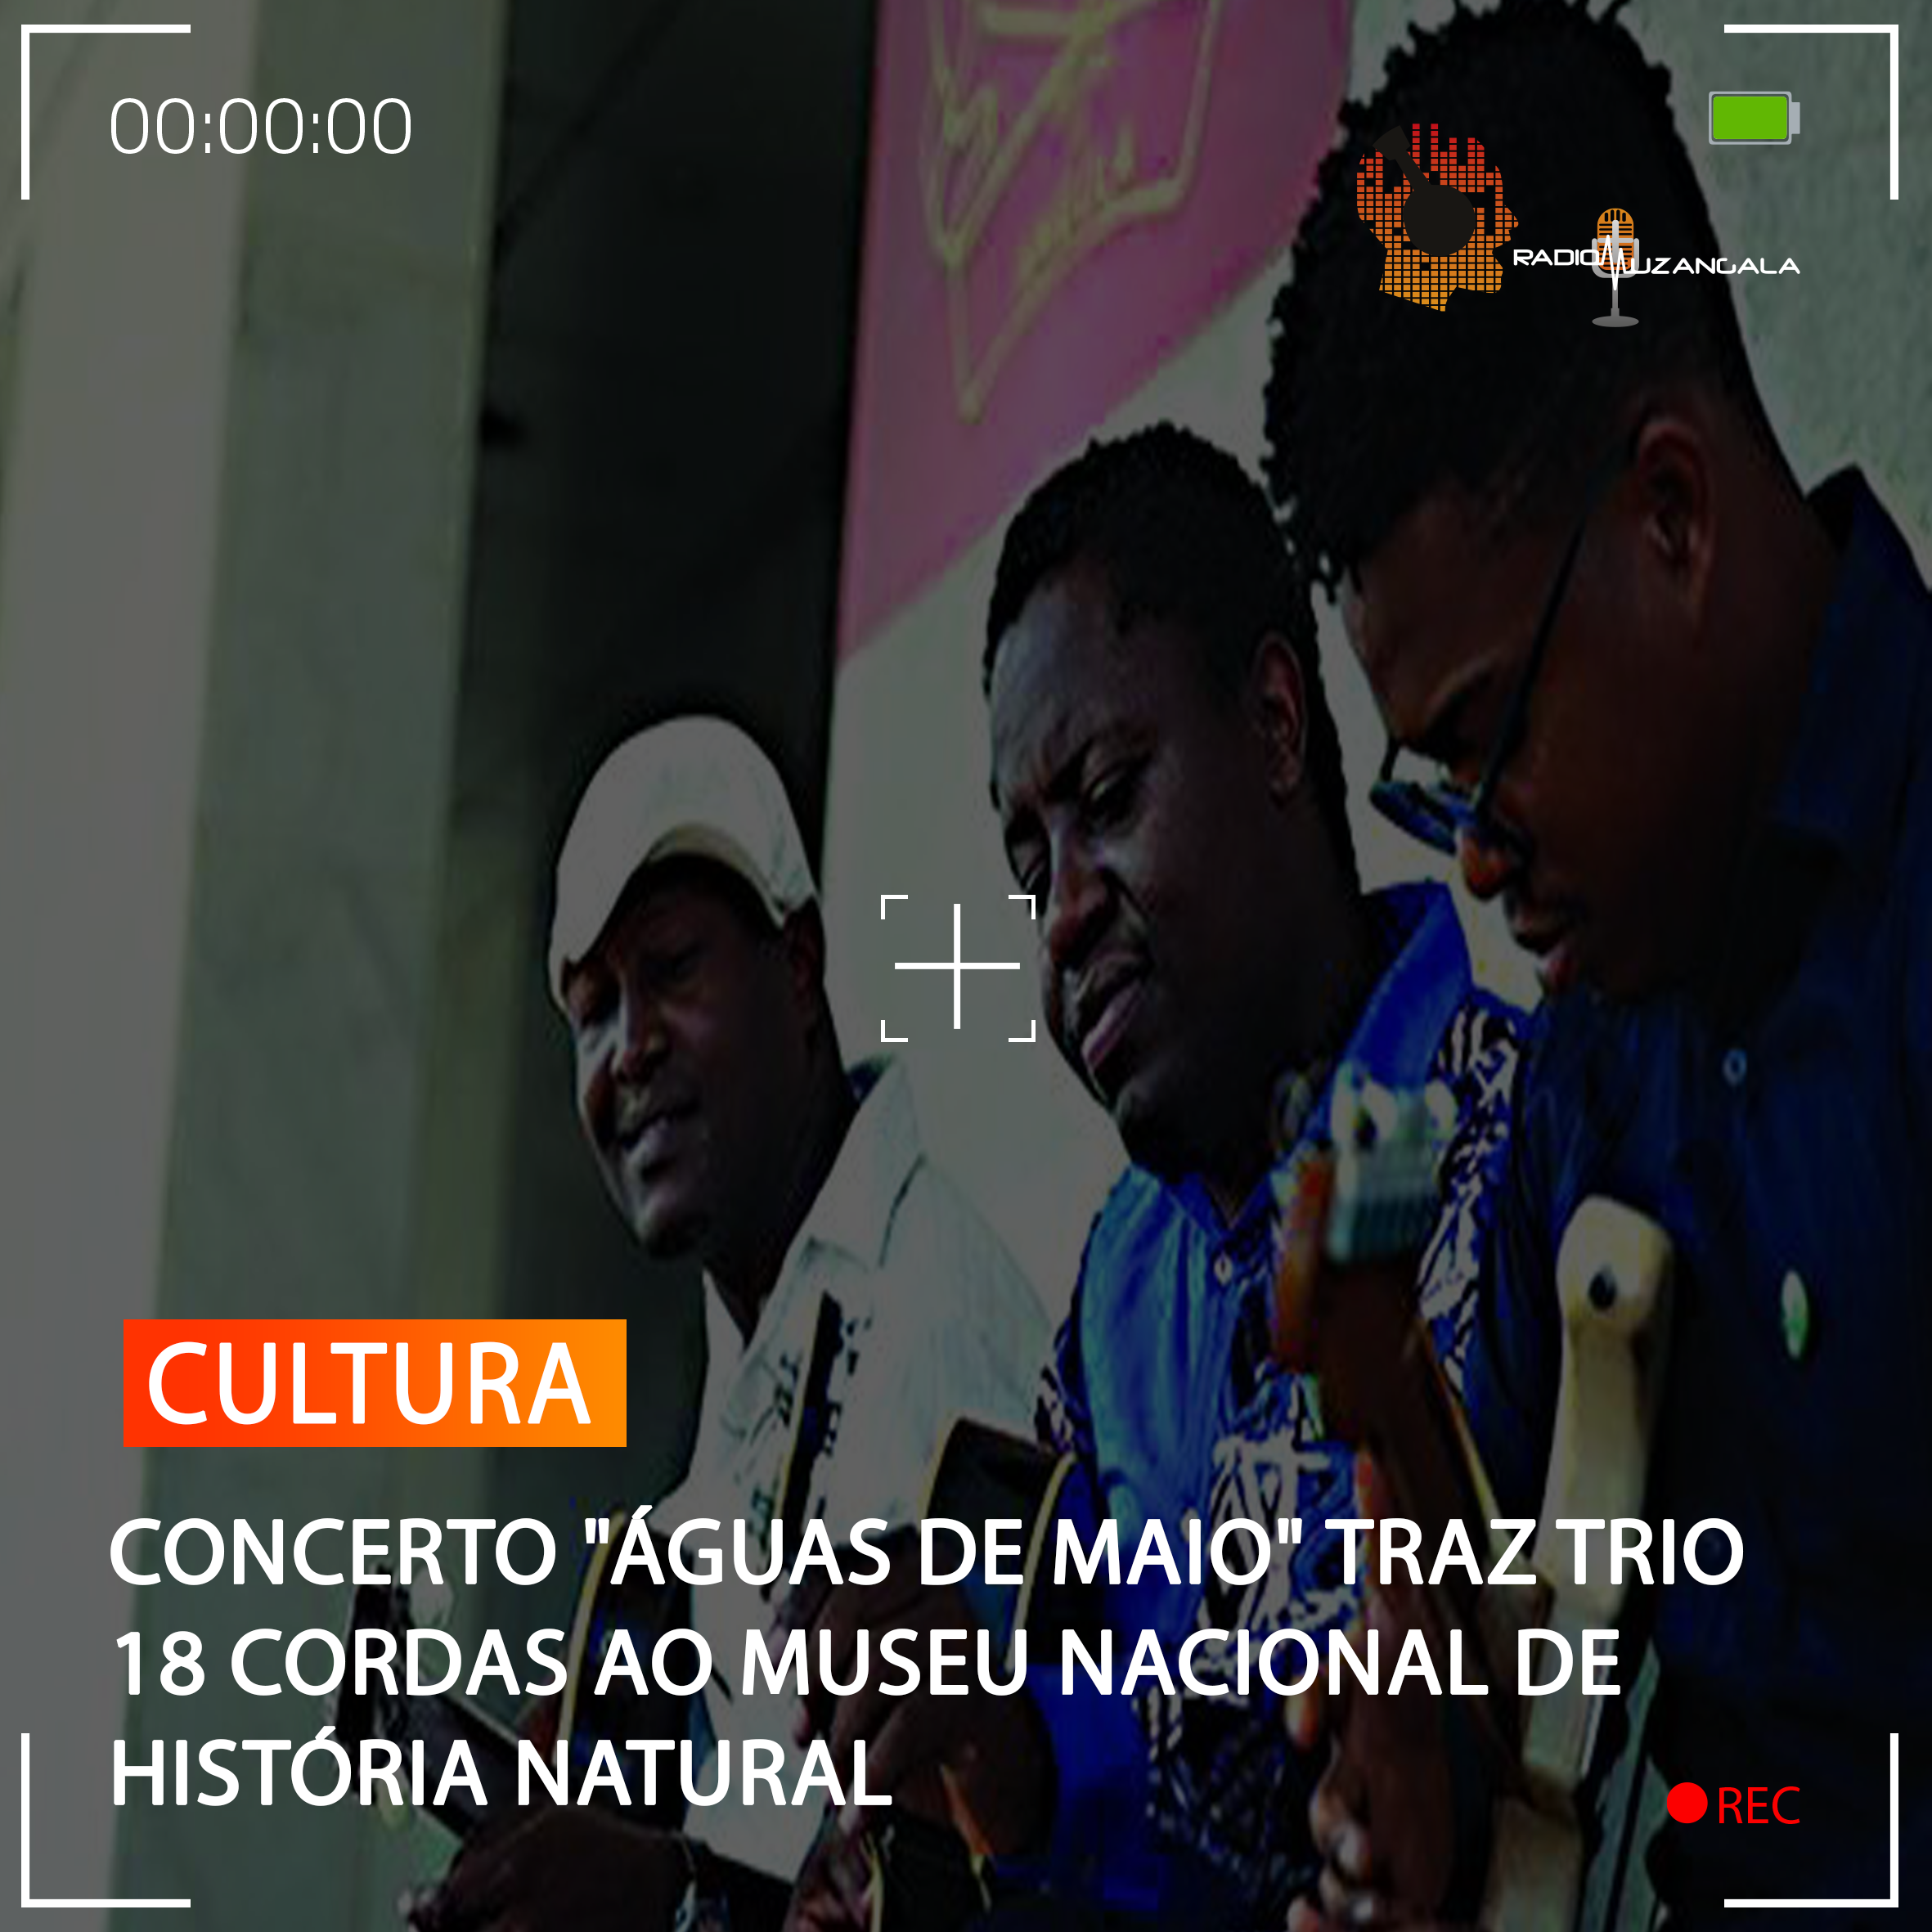  CONCERTO “ÁGUAS DE MAIO” TRAZ TRIO 18 CORDAS AO MUSEU NACIONAL DE HISTÓRIA NATURAL